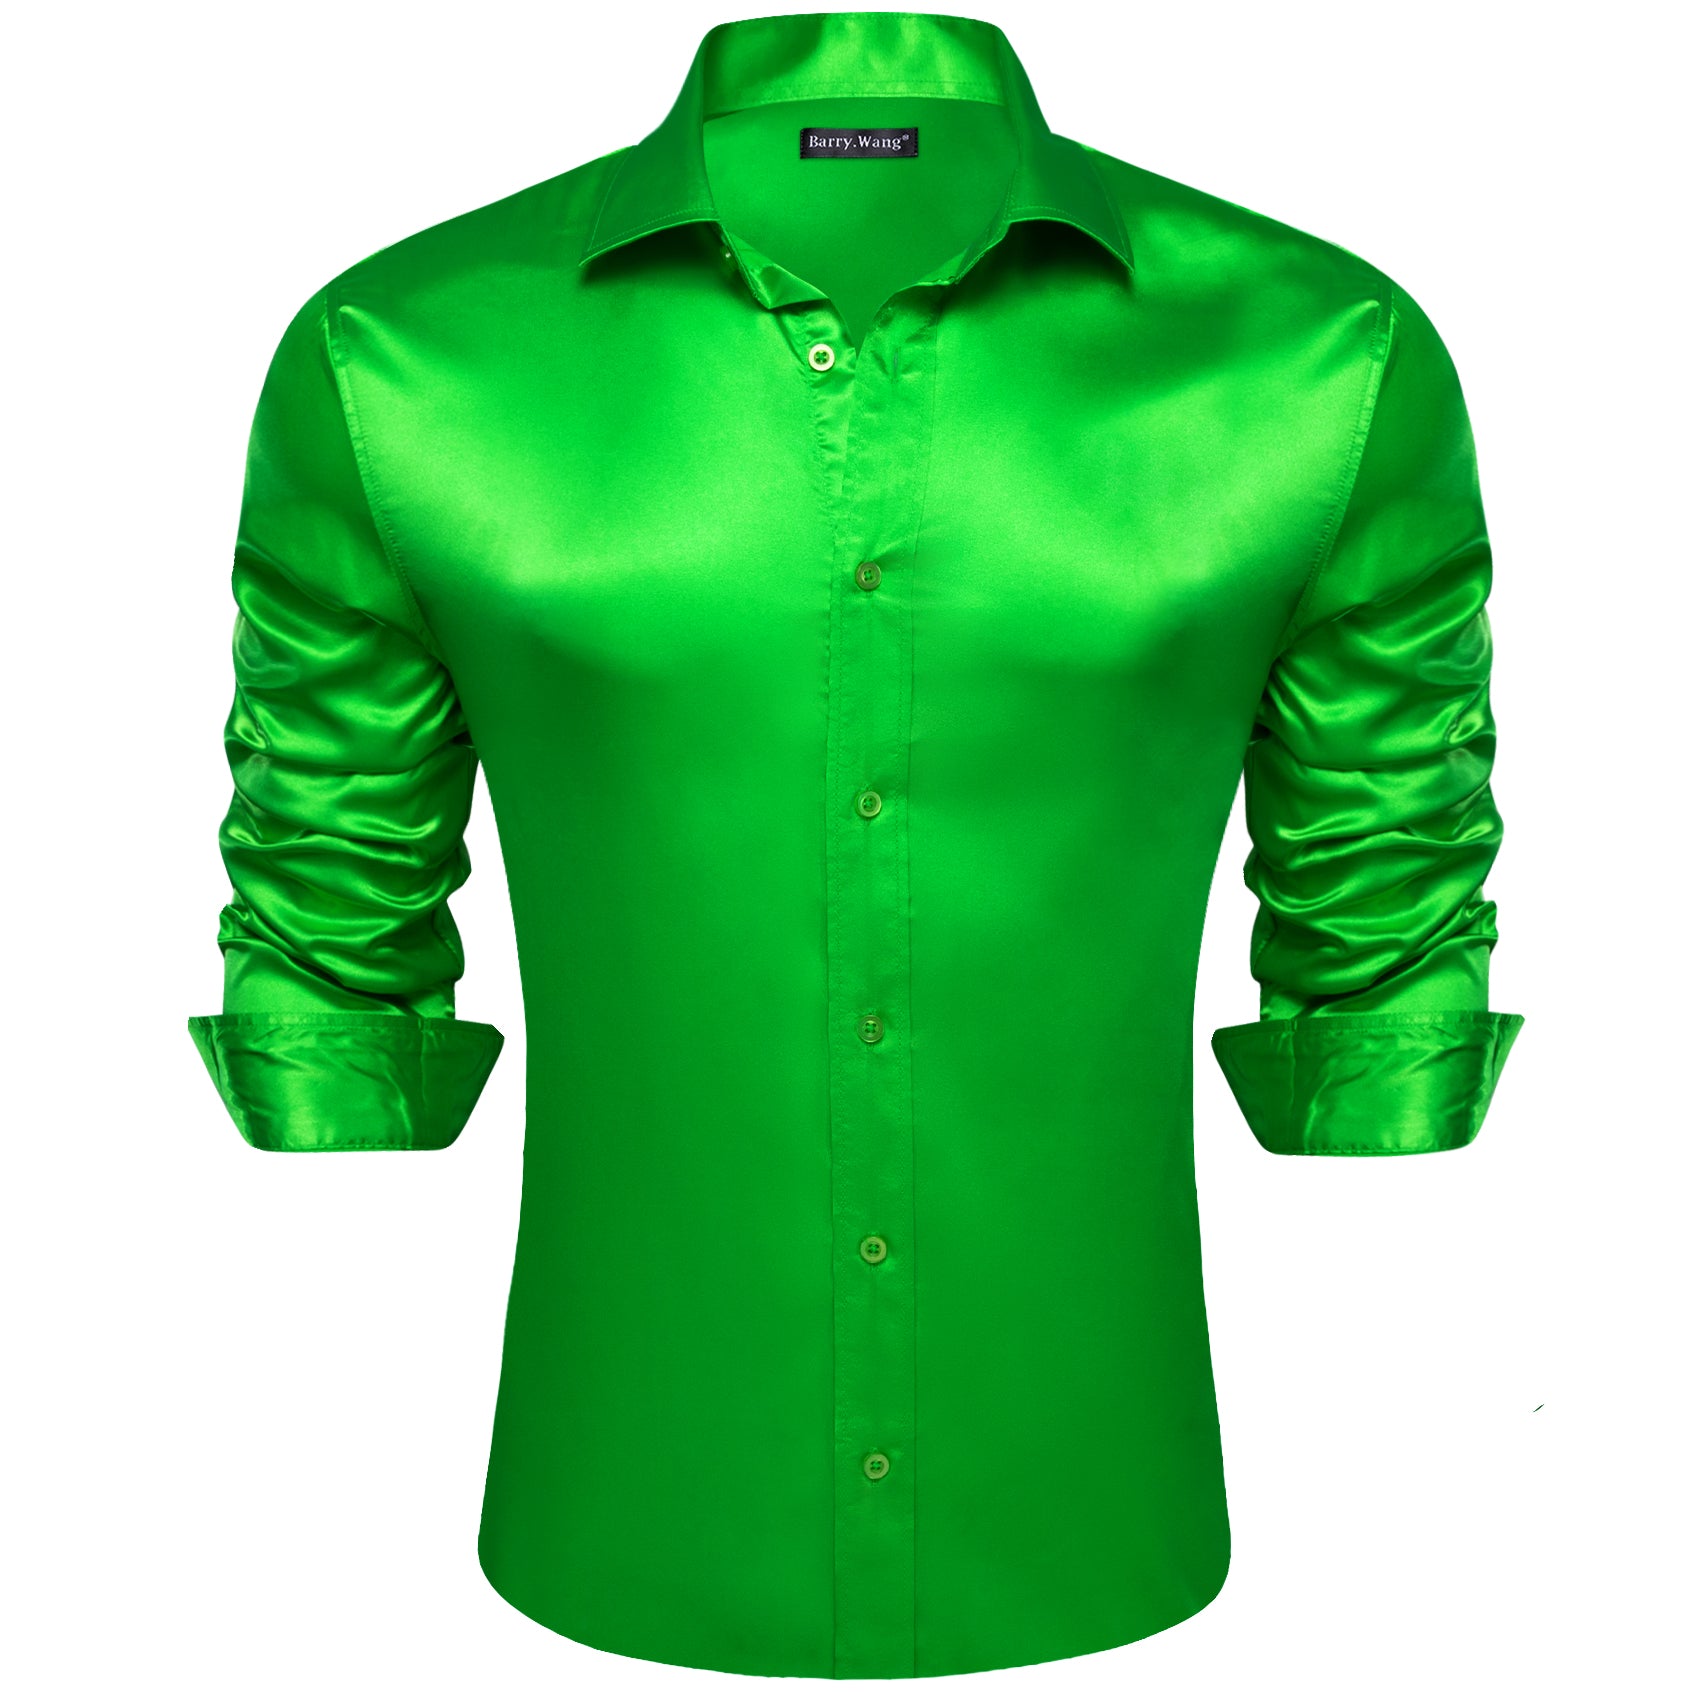 Barry.wang Green Solid Silk Shirt